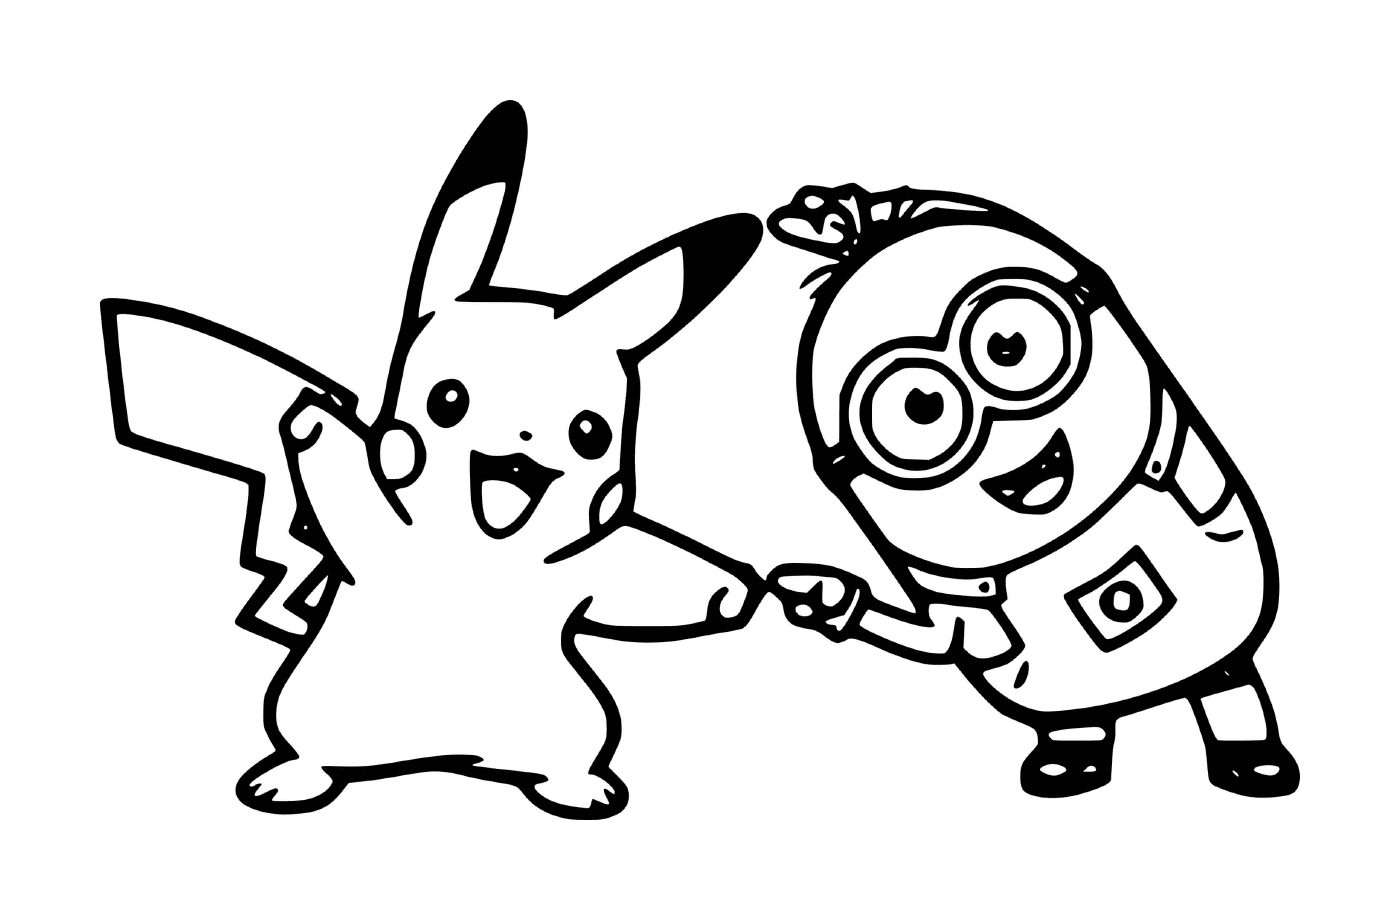   Minion et Pikachu ensemble 